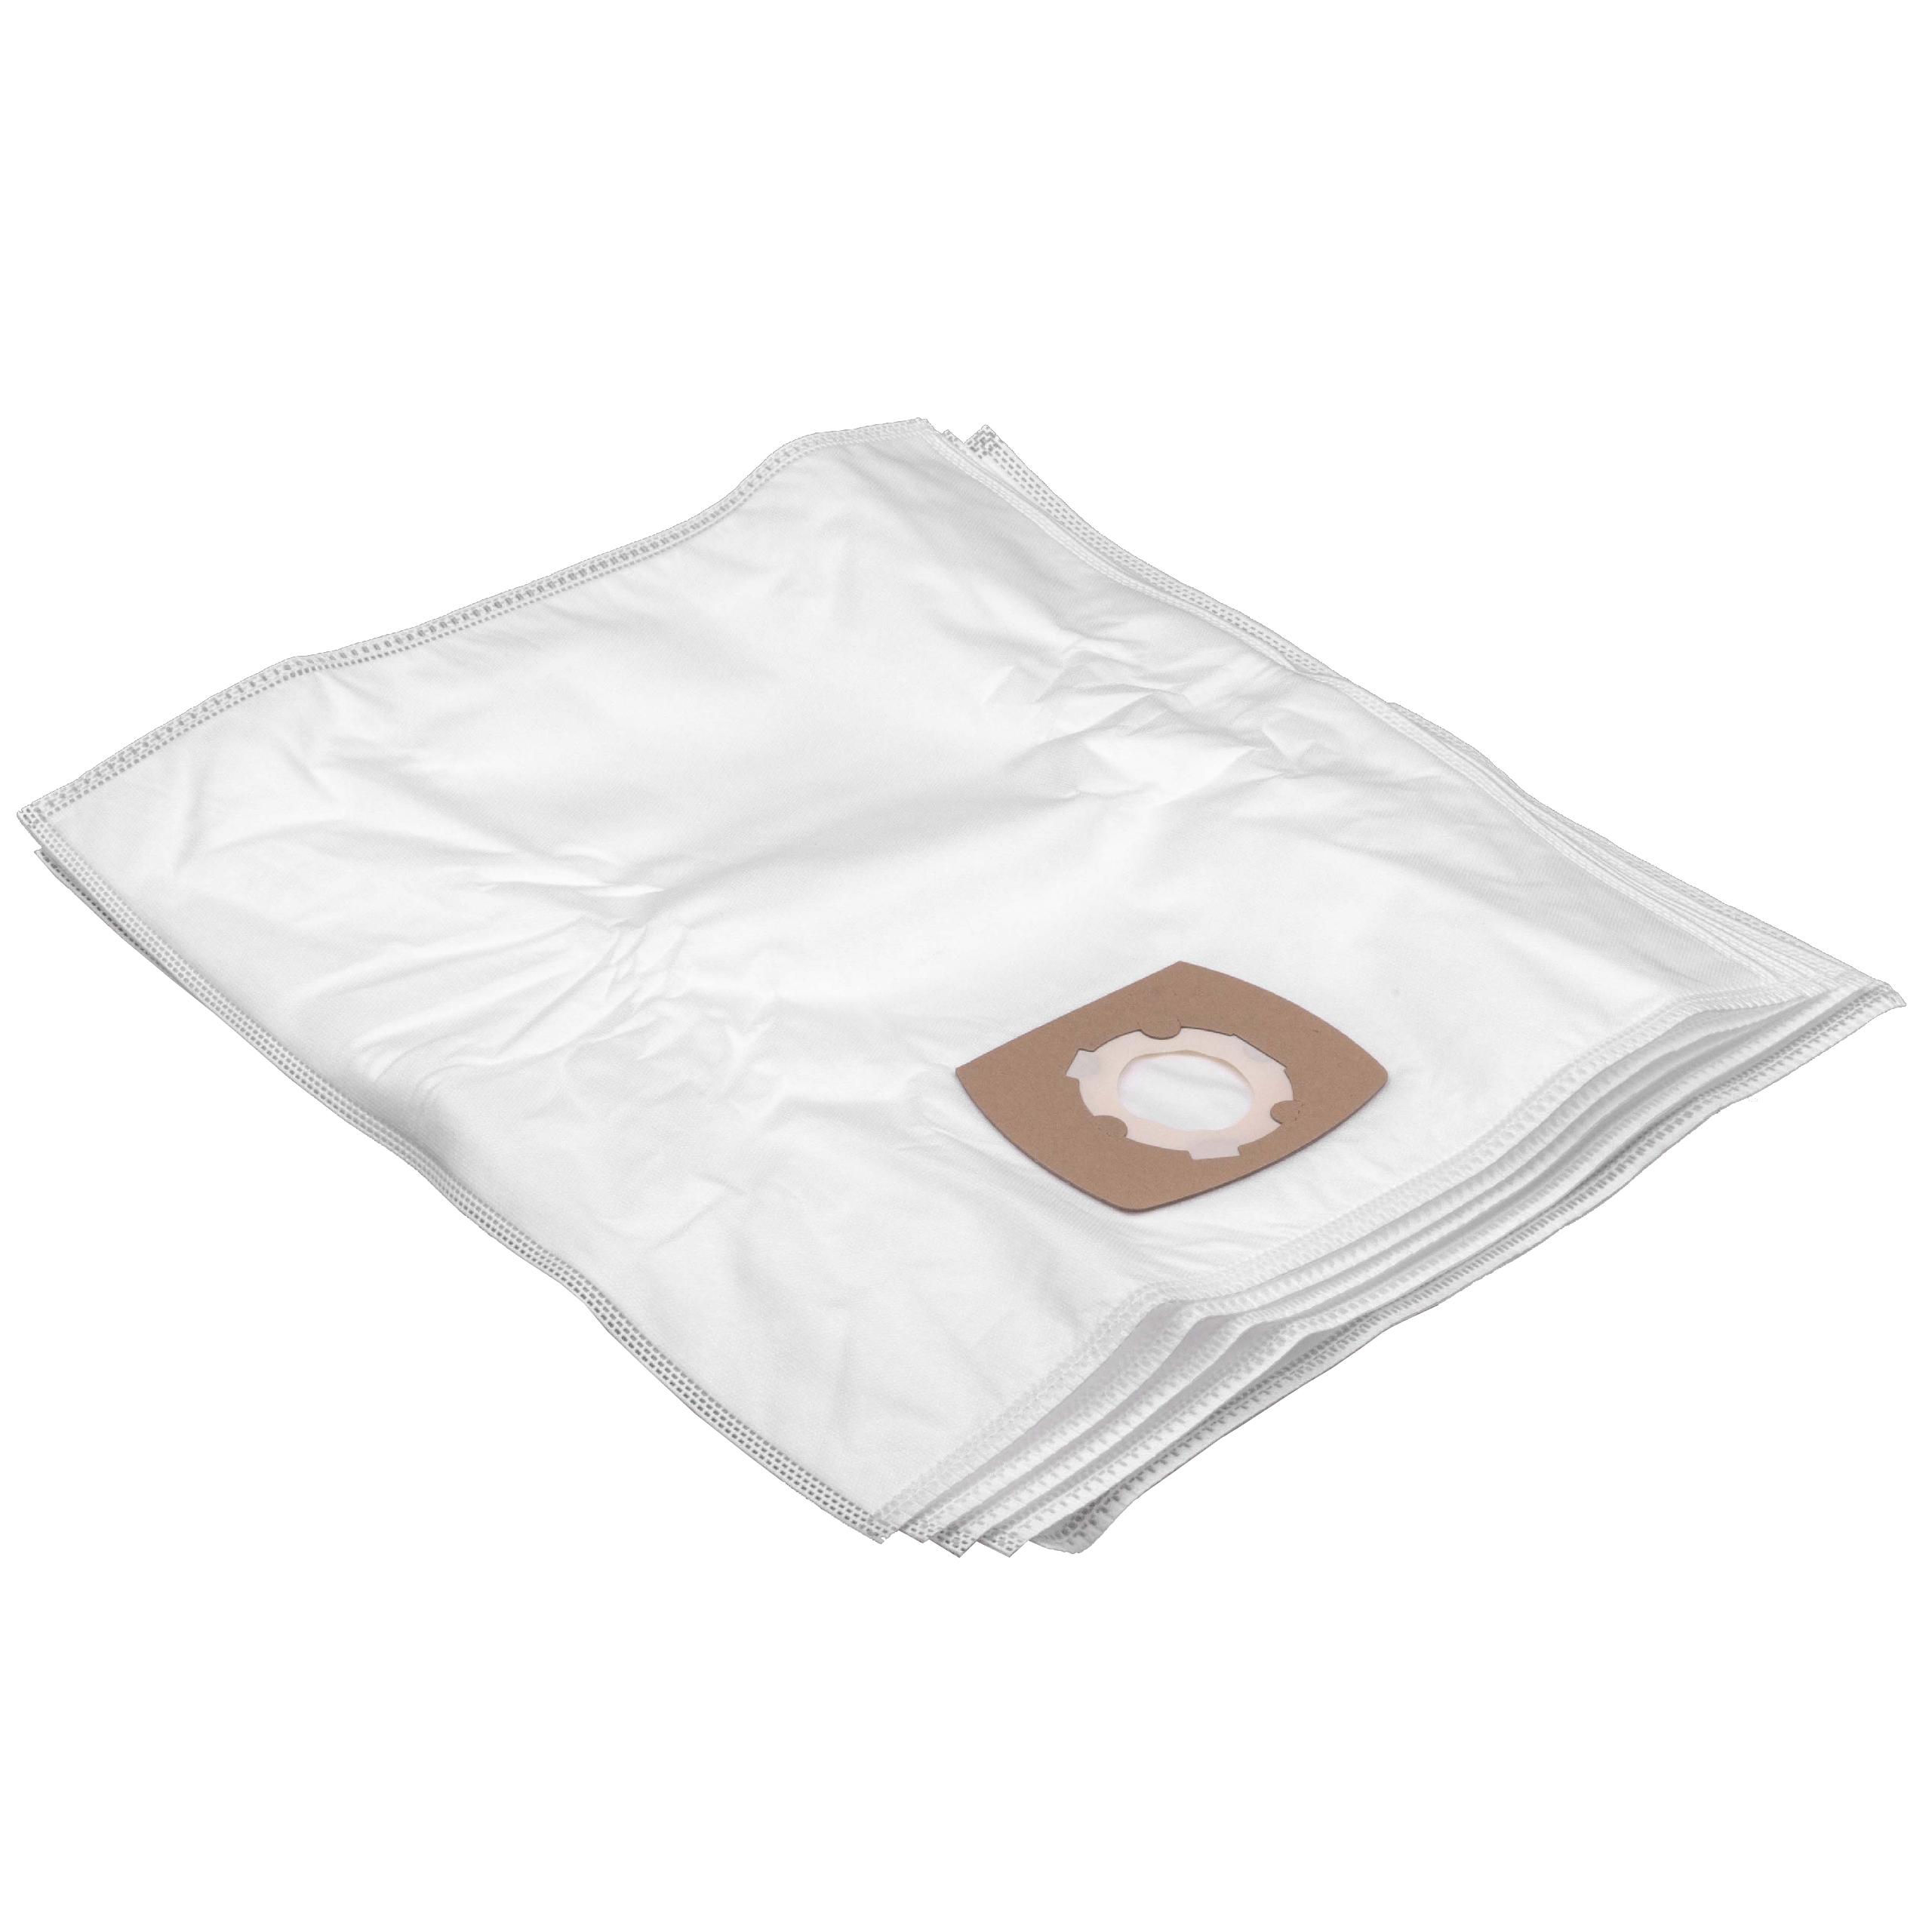 5x worek do odkurzacza Satrap zamiennik Grundig Typ G - Hygiene Bag - mikrowłóknina